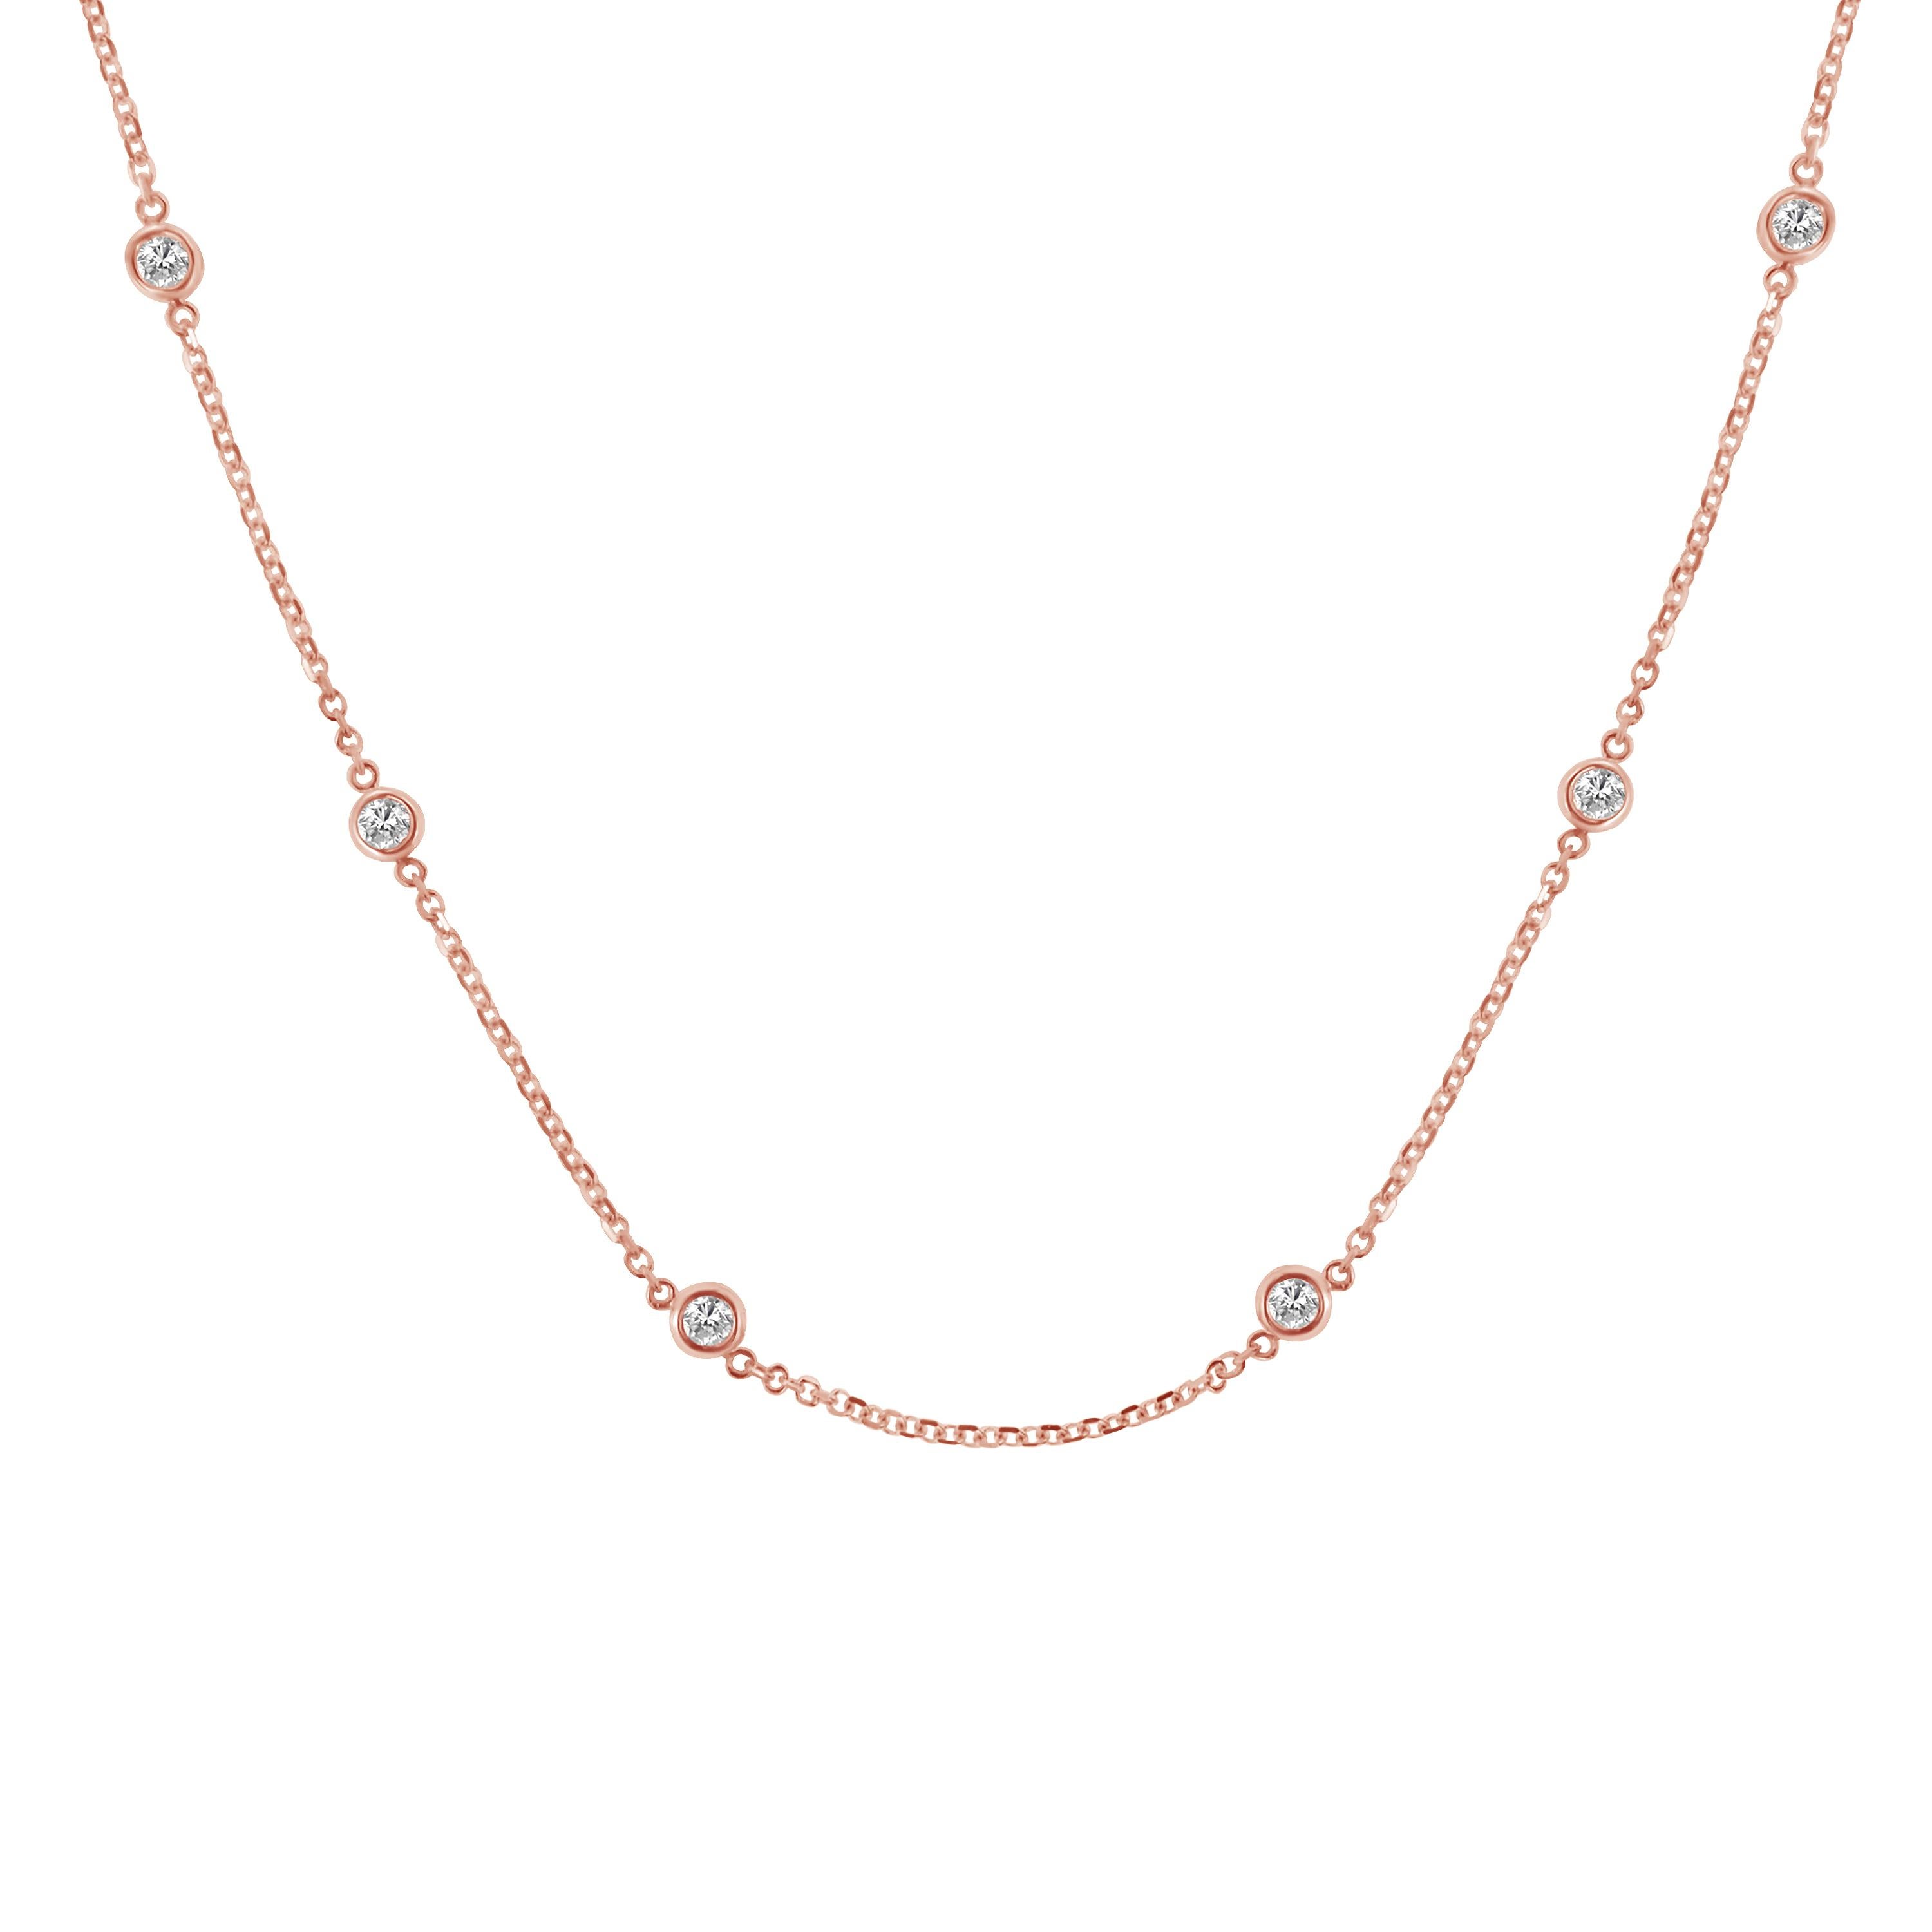 Ce collier en argent sterling avec diamants, disponible dans les couleurs blanc, jaune et rose, est un complément idéal pour les tenues habillées et décontractées. Il est extrêmement tendance, classe et à la mode. Douze diamants ronds de taille